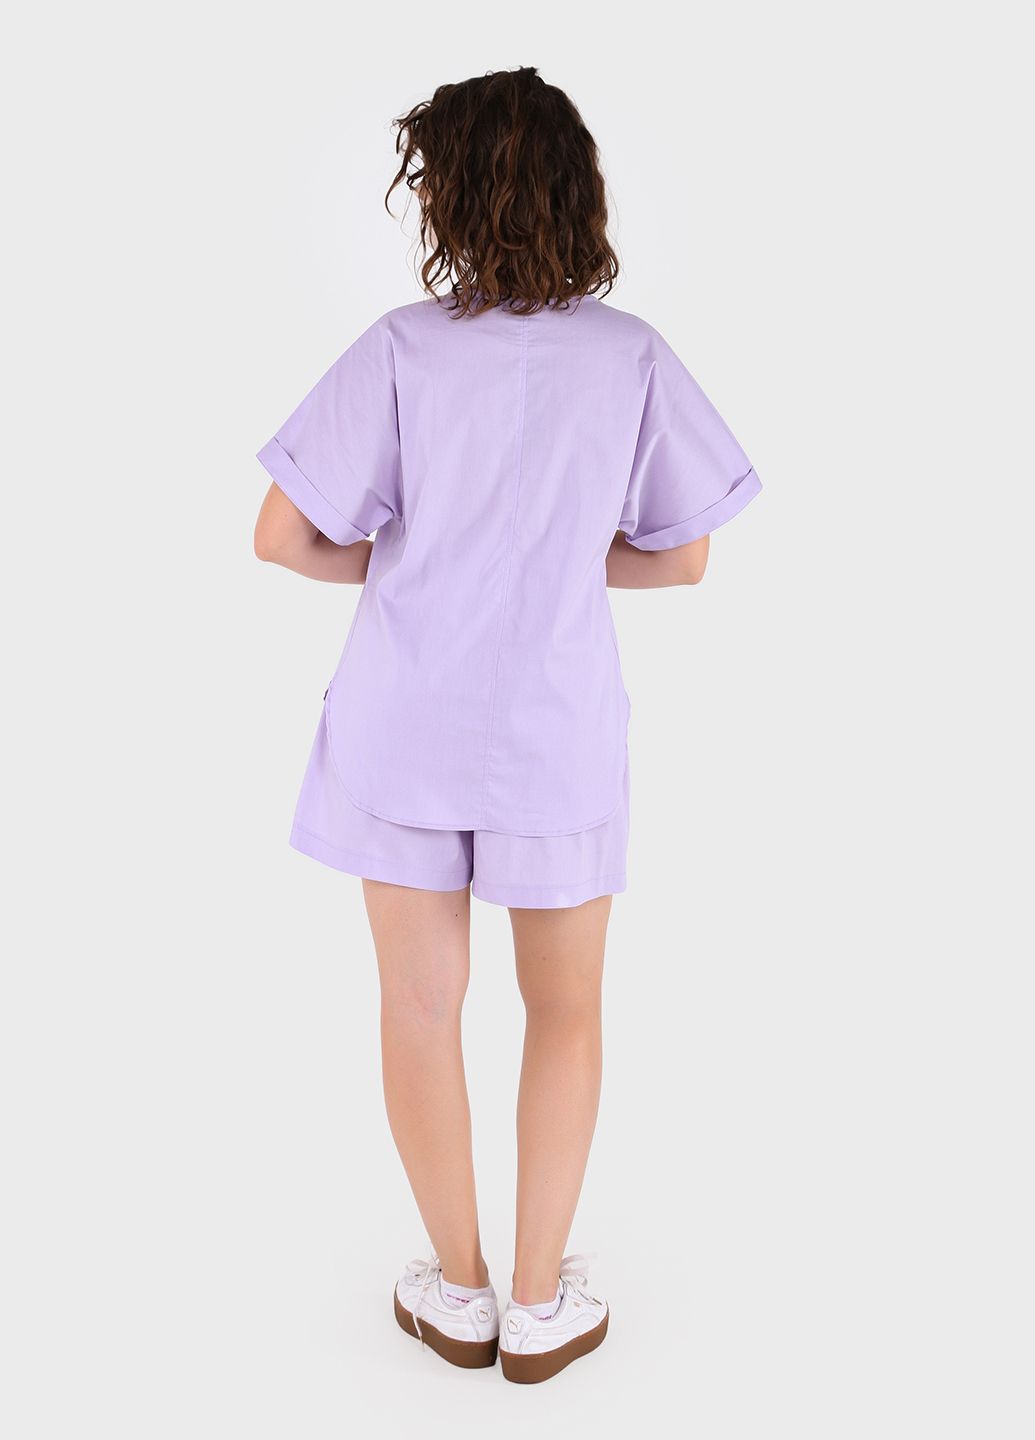 Купить Хлопковые шорты женские бермуды сиреневого цвета Merlini Перуджа 300000050, размер 42-44 в интернет-магазине